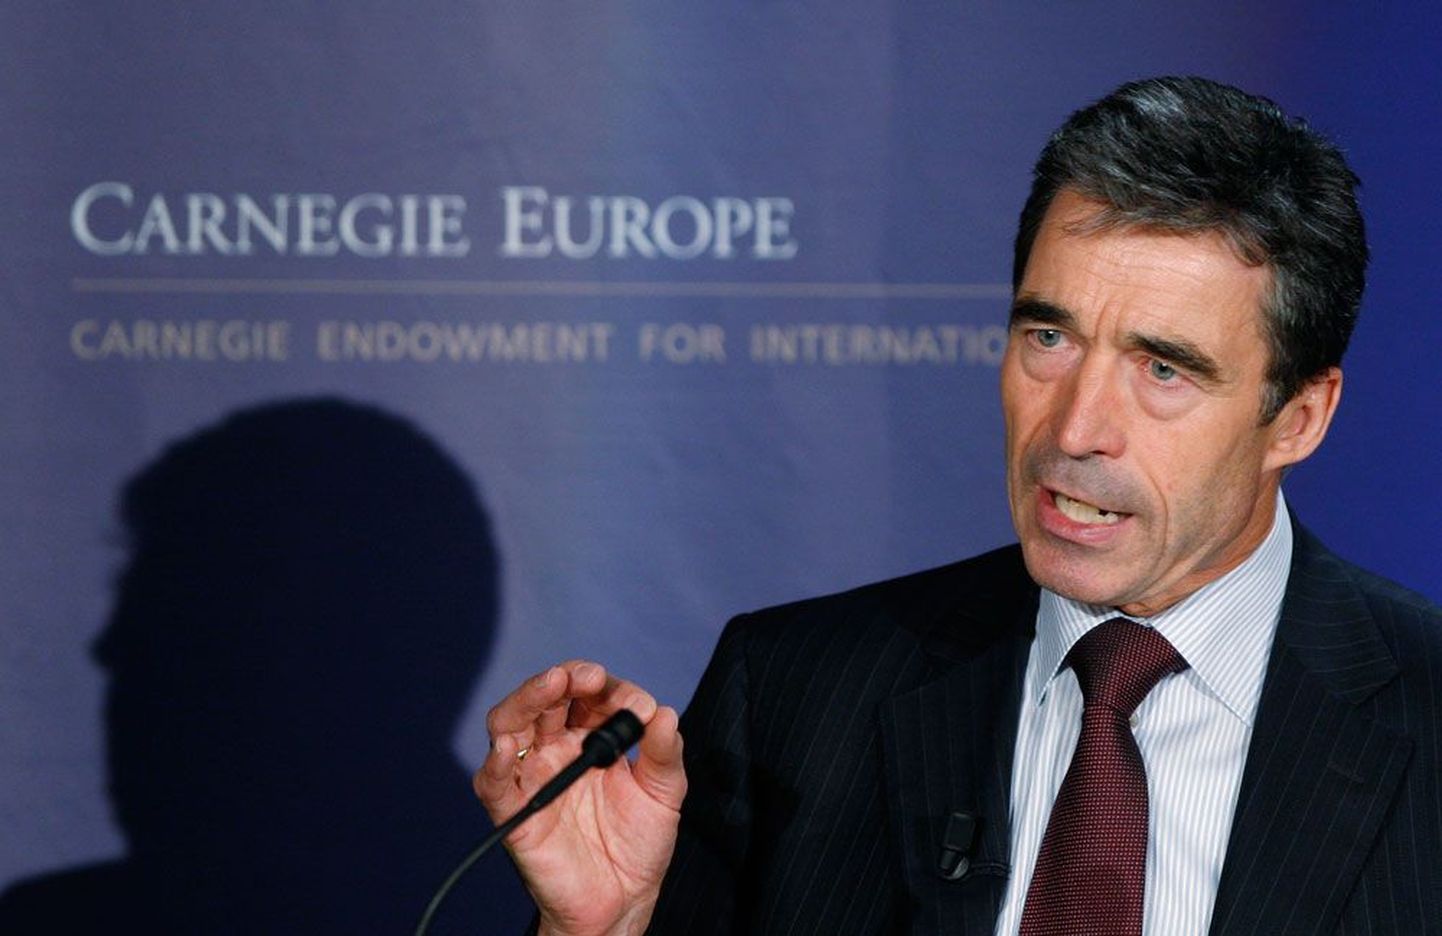 Augustis NATO peasekretäriks tõusnud Anders Fogh Rasmussen eile Brüsselis Carnegie keskuses.